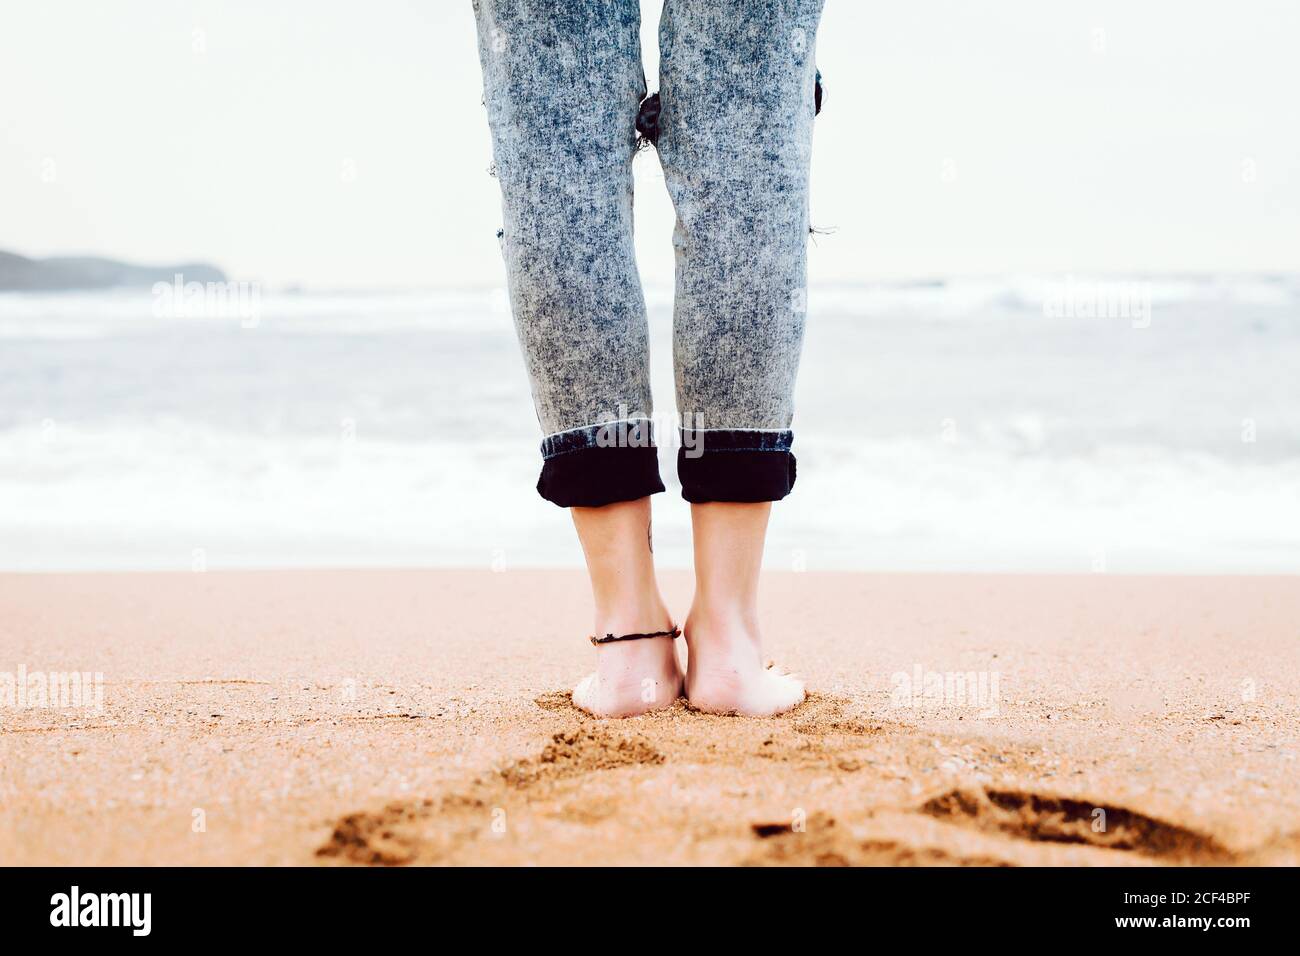 Vue arrière des jambes de la femme pieds nus portant du denim sur une plage de sable avec une mer orageux et un ciel gris en arrière-plan Banque D'Images